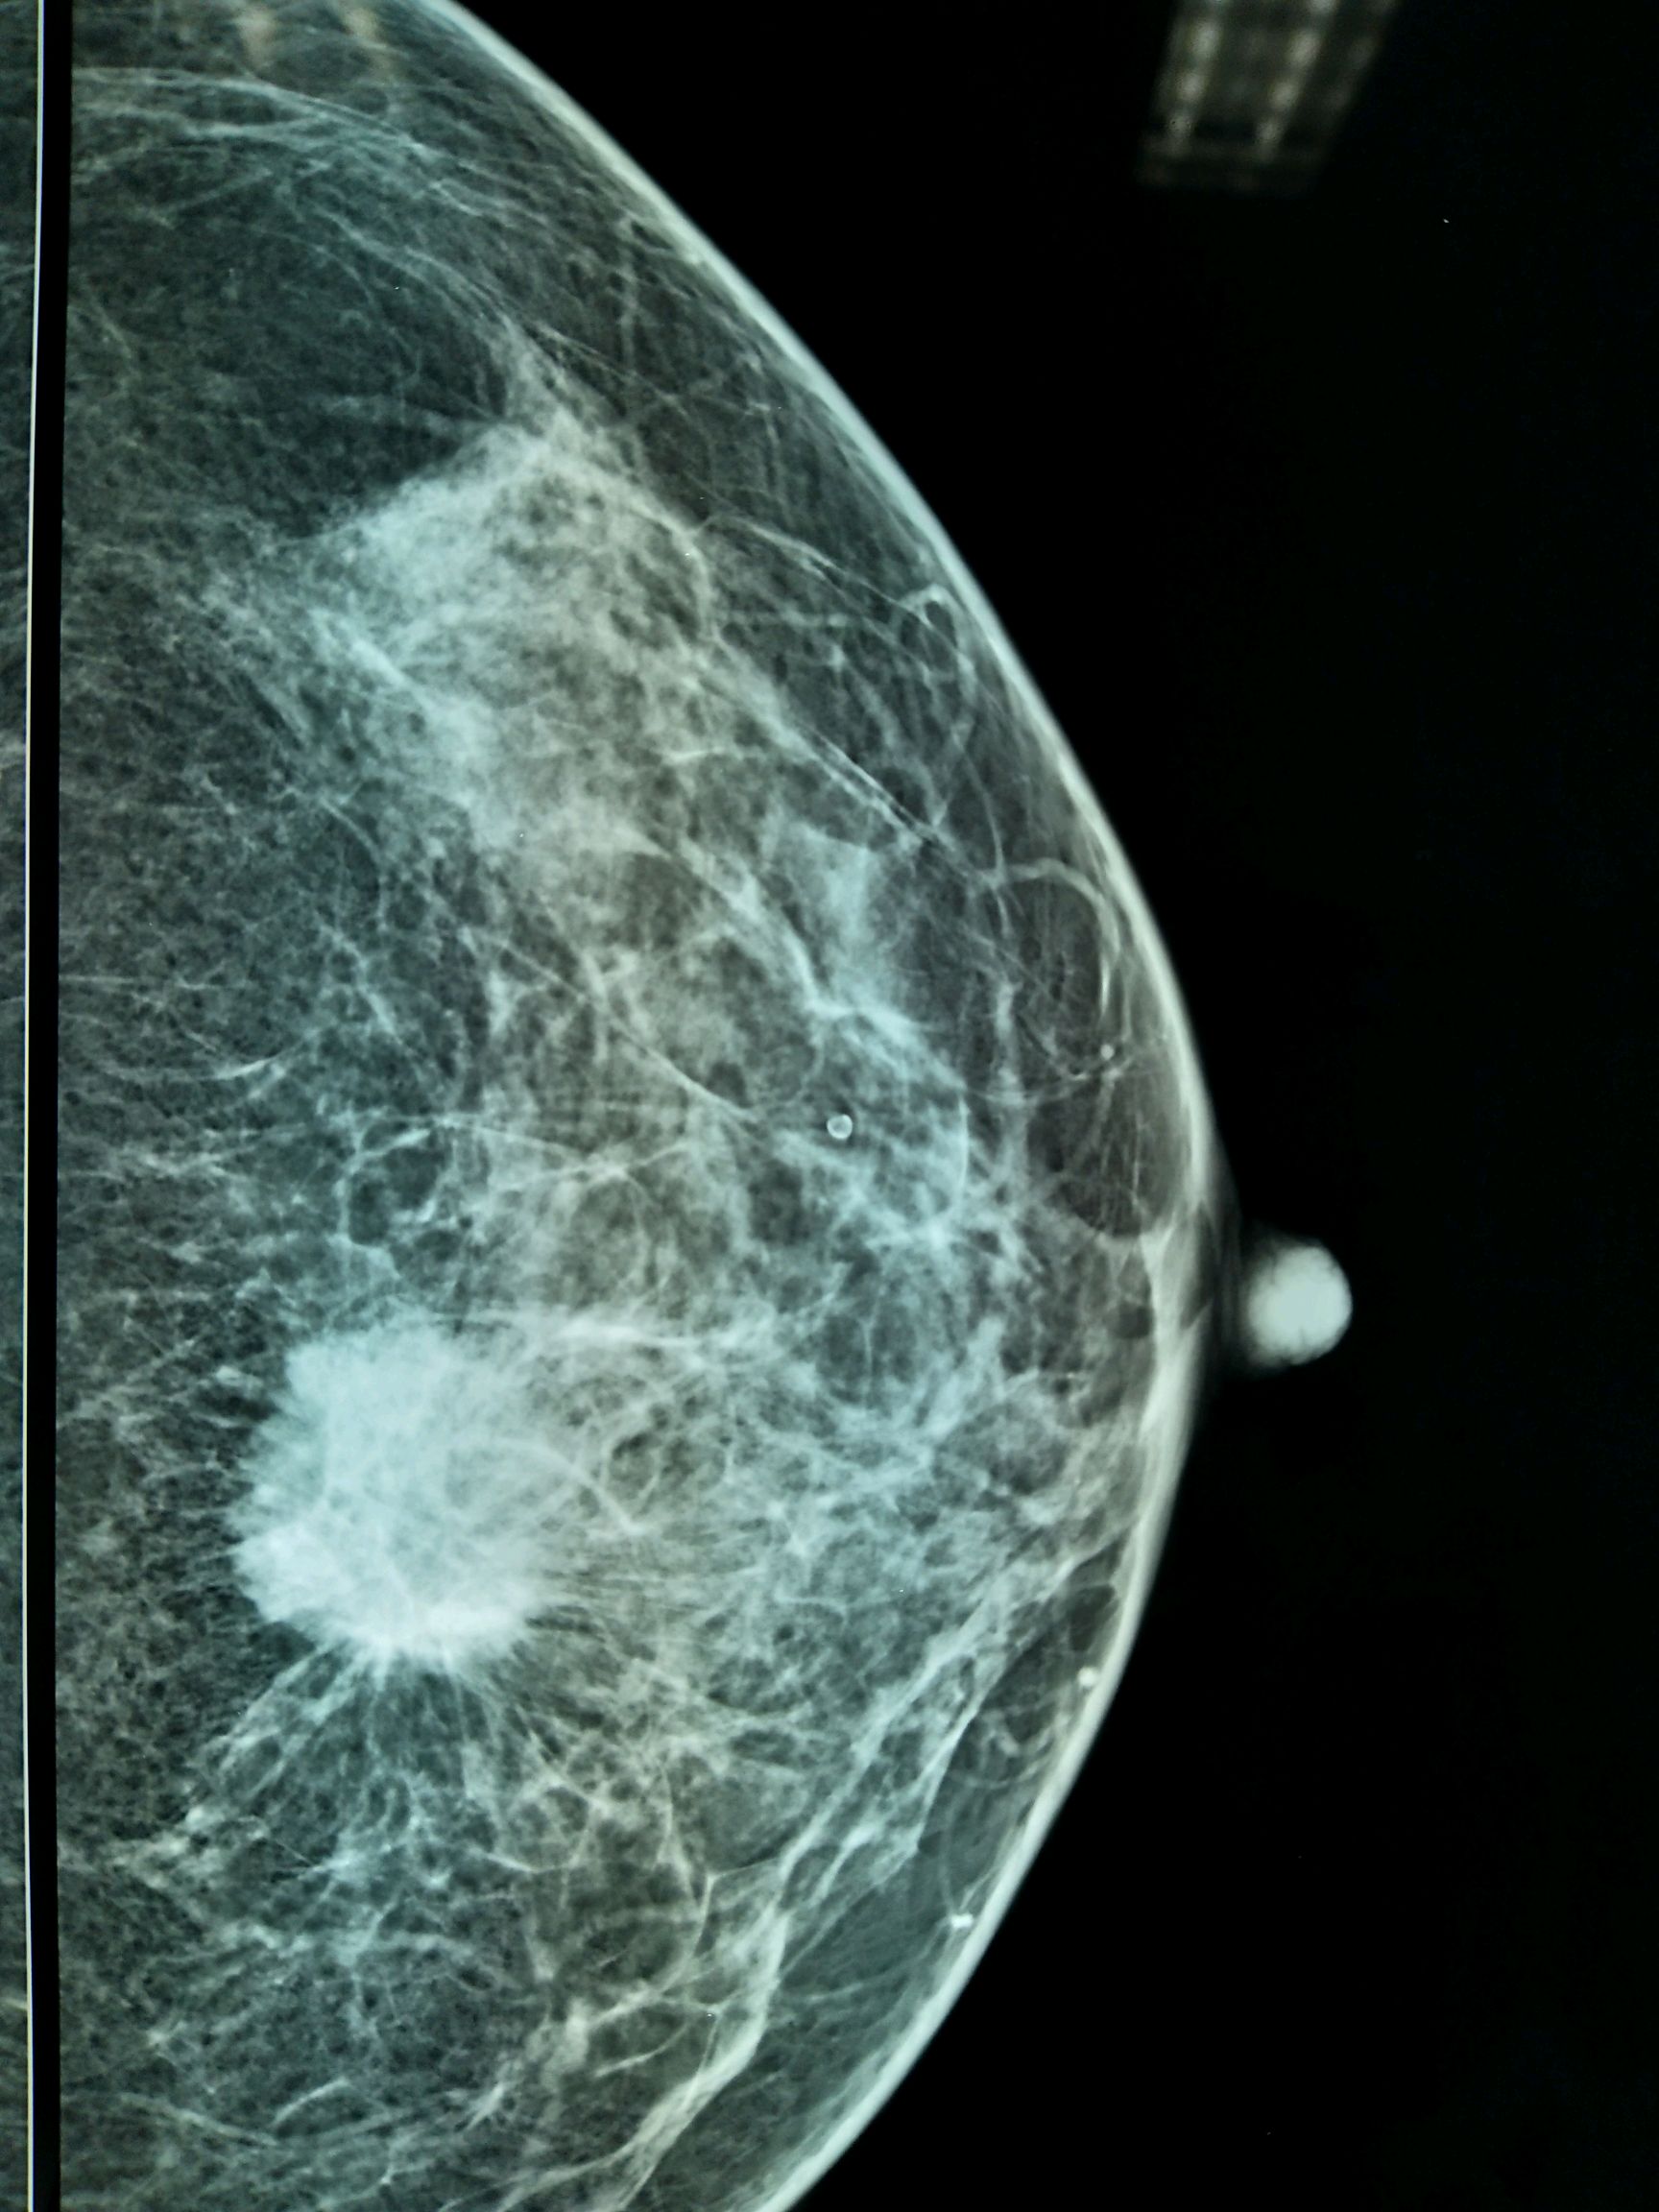 乳癌早期图片